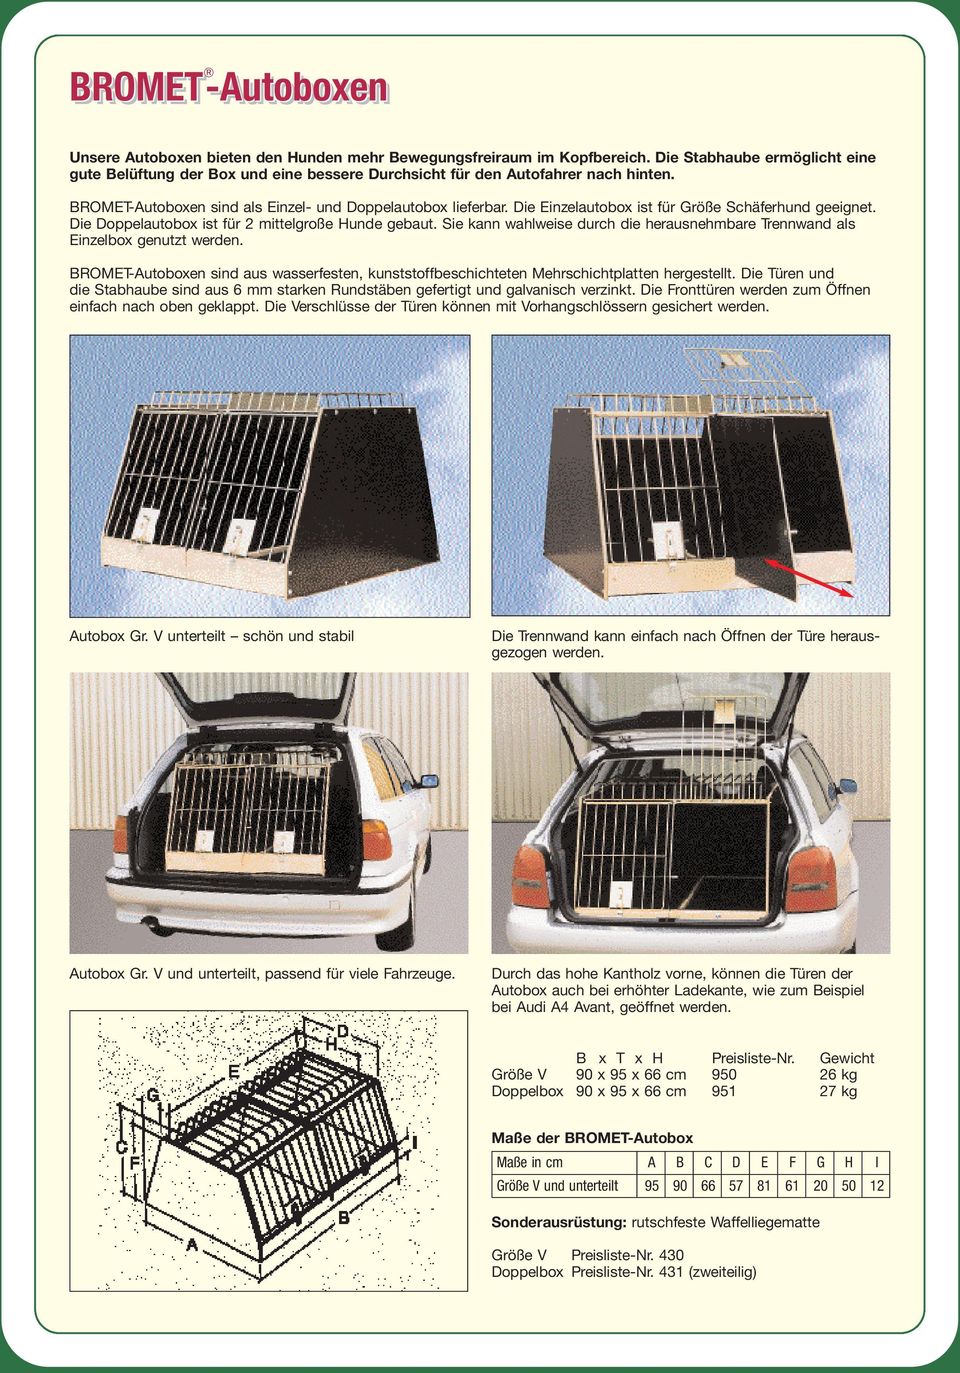 Die Einzelautobox ist für Größe Schäferhund geeignet. Die Doppelautobox ist für 2 mittelgroße Hunde gebaut. Sie kann wahlweise durch die herausnehmbare Trennwand als Einzelbox genutzt werden.